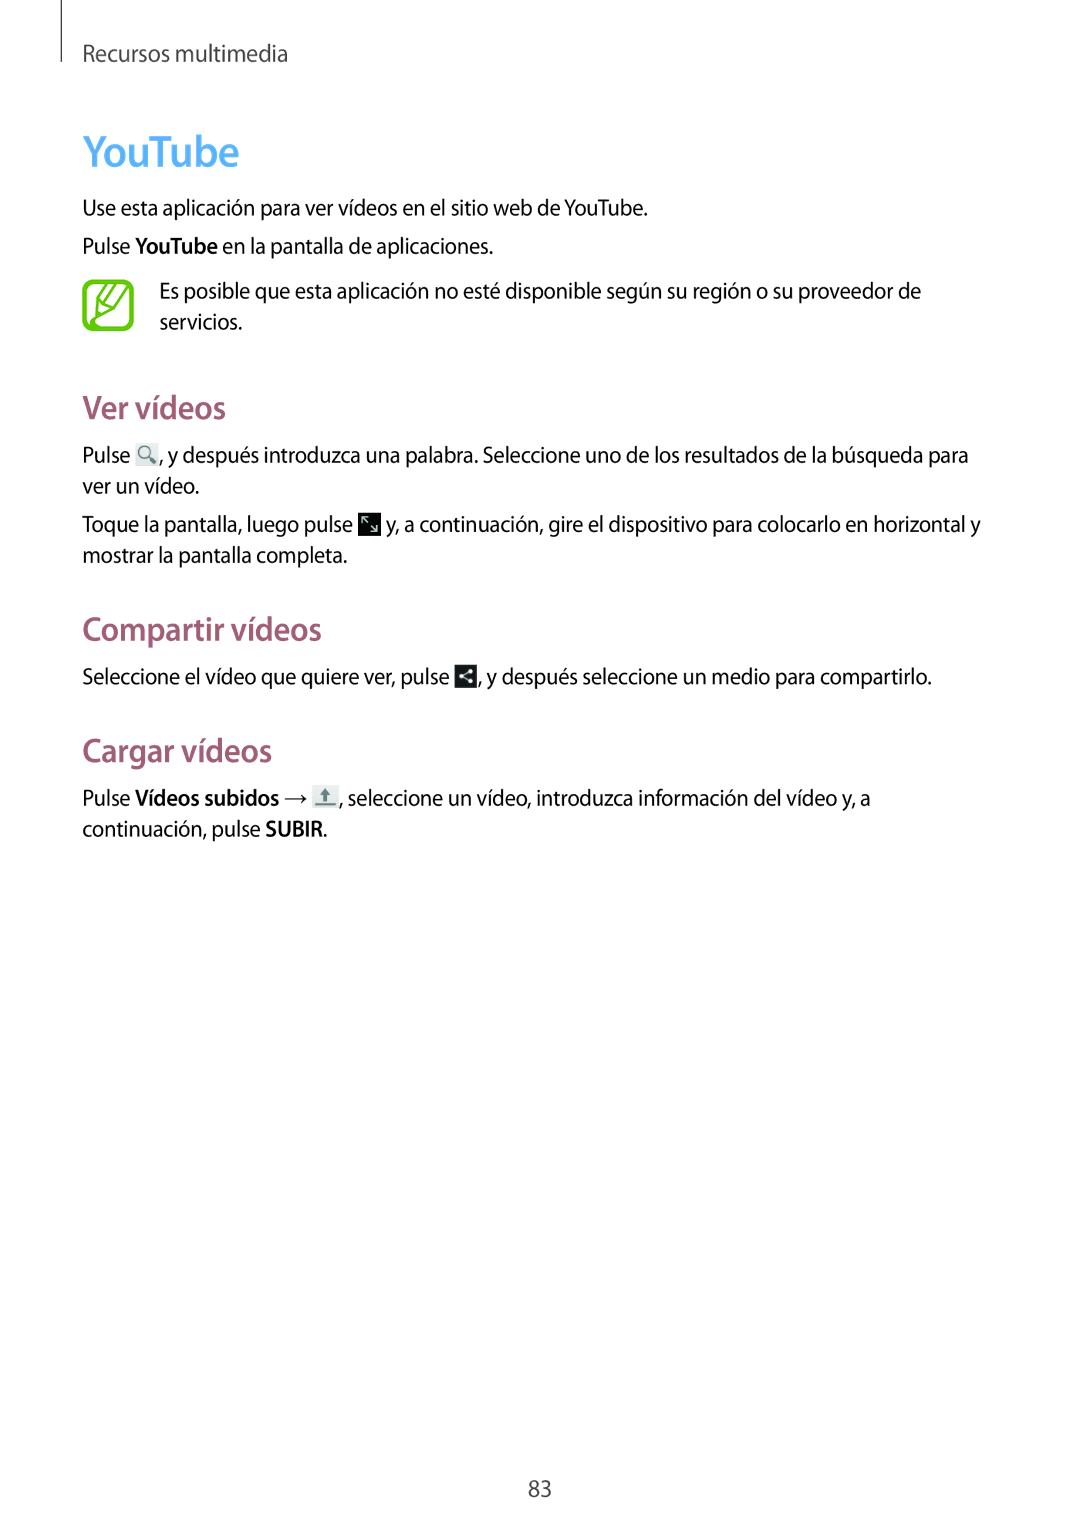 Samsung GT-N8020EAAATL manual YouTube, Ver vídeos, Cargar vídeos 